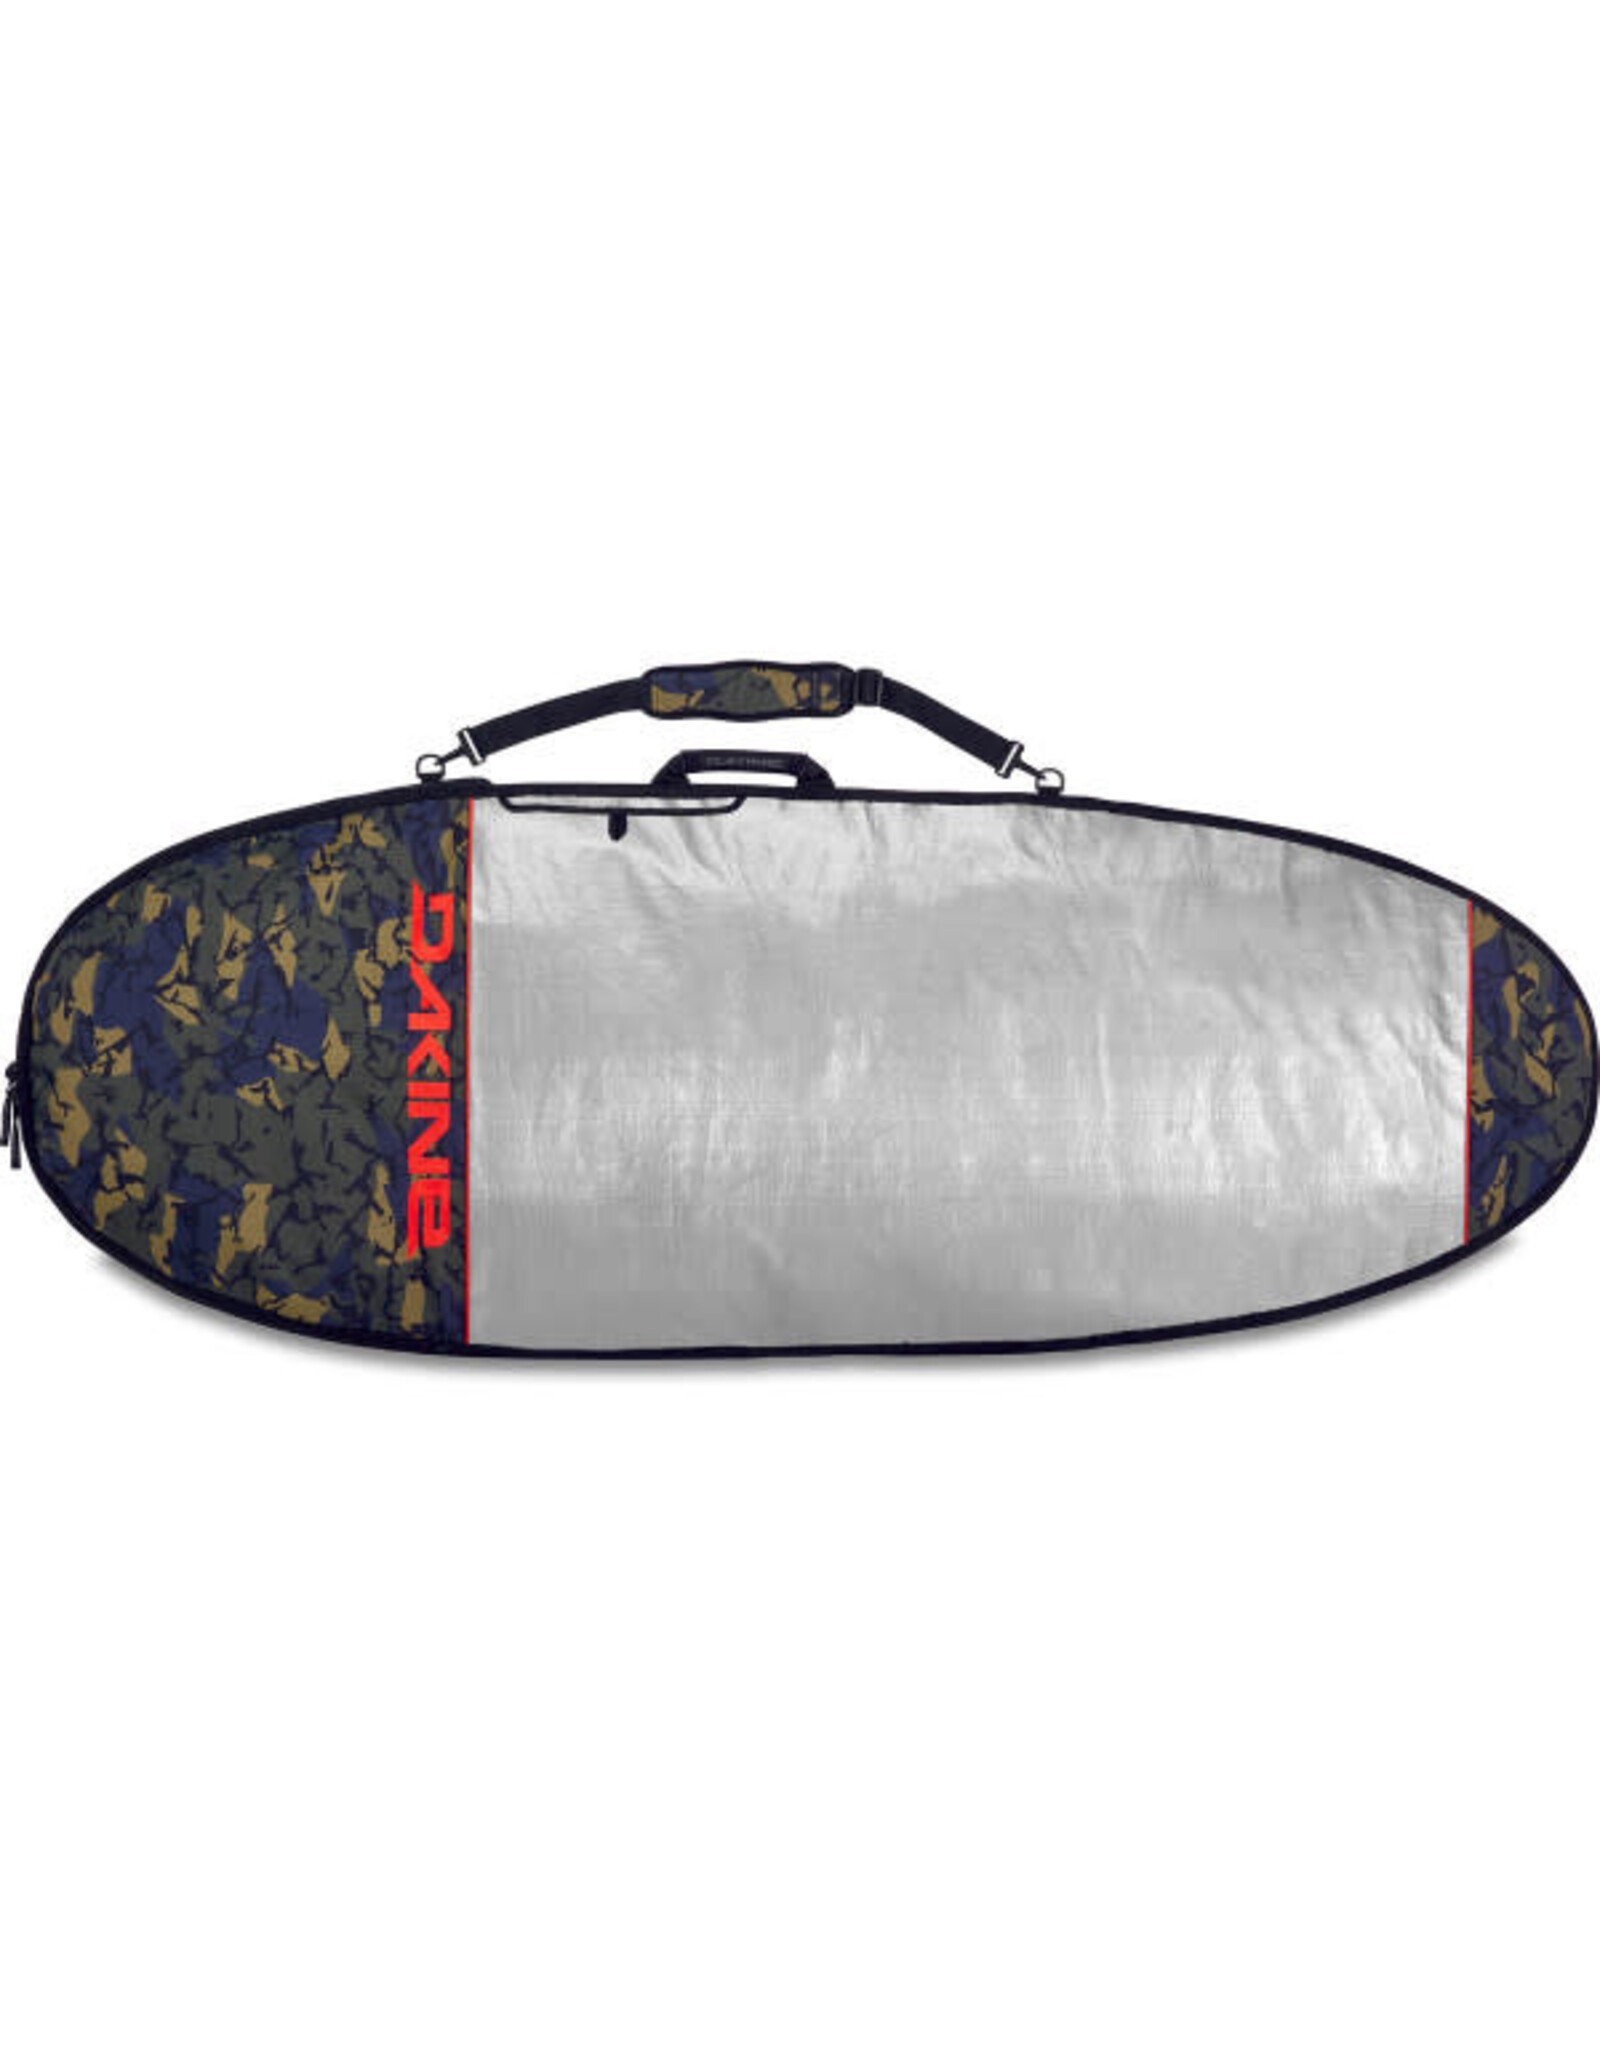 Dakine Dakine 6'0" Daylight Hybrid Surfboard Bag Dark Tide